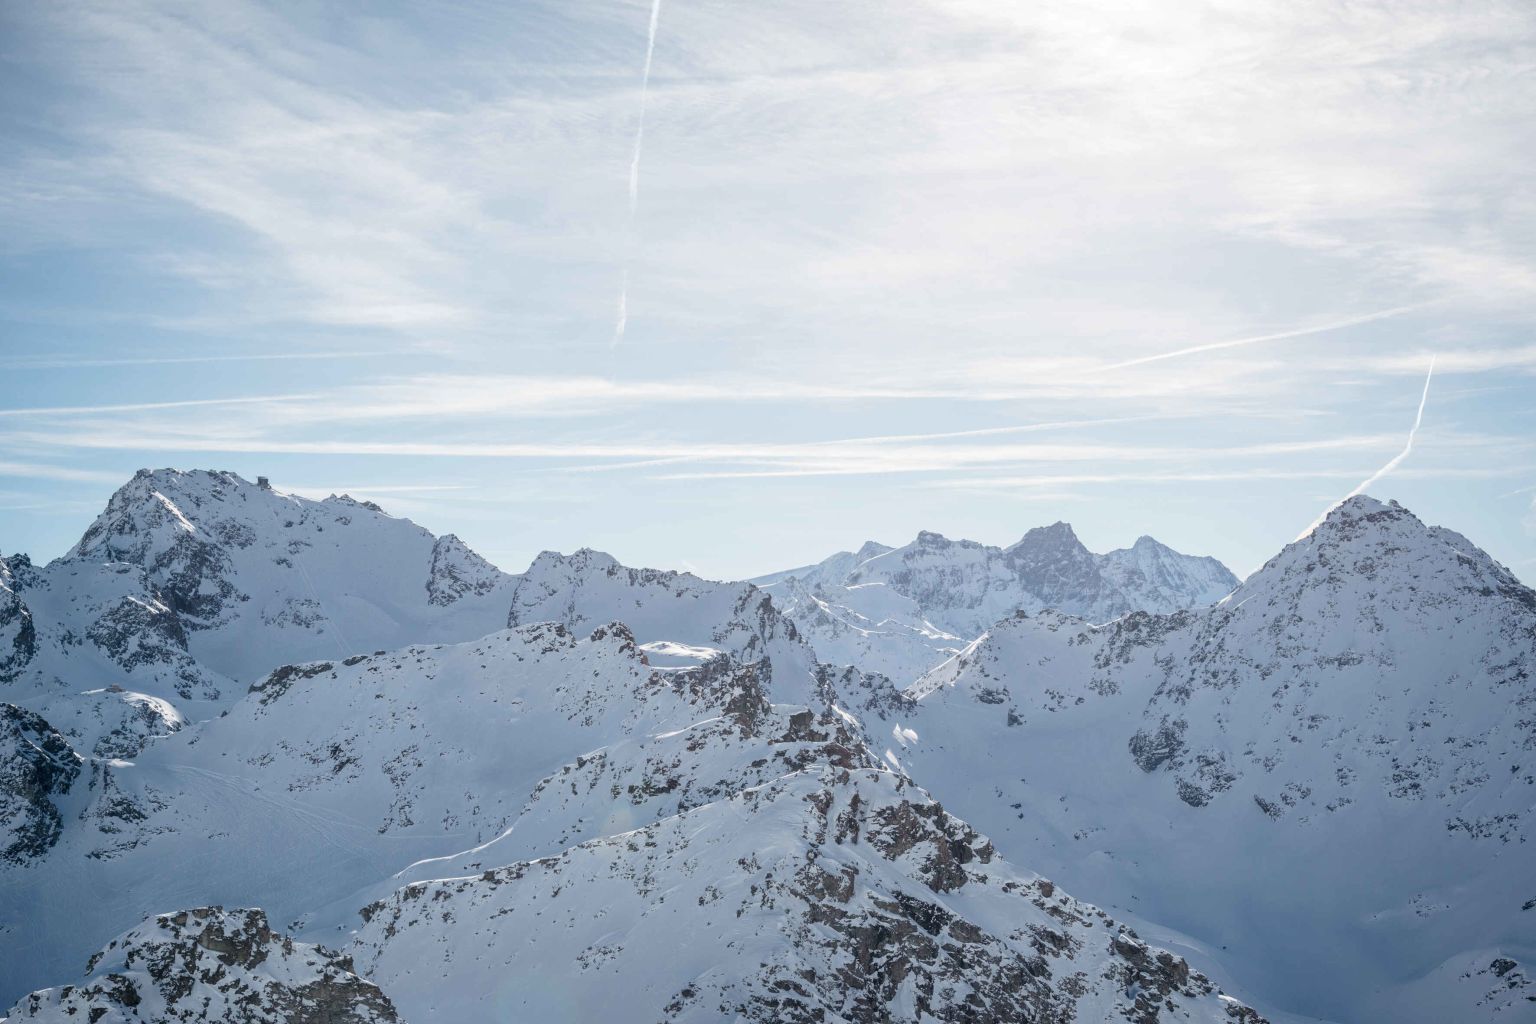 Montagnes valaisannes enneigées, Nendaz. Valais, Suisse